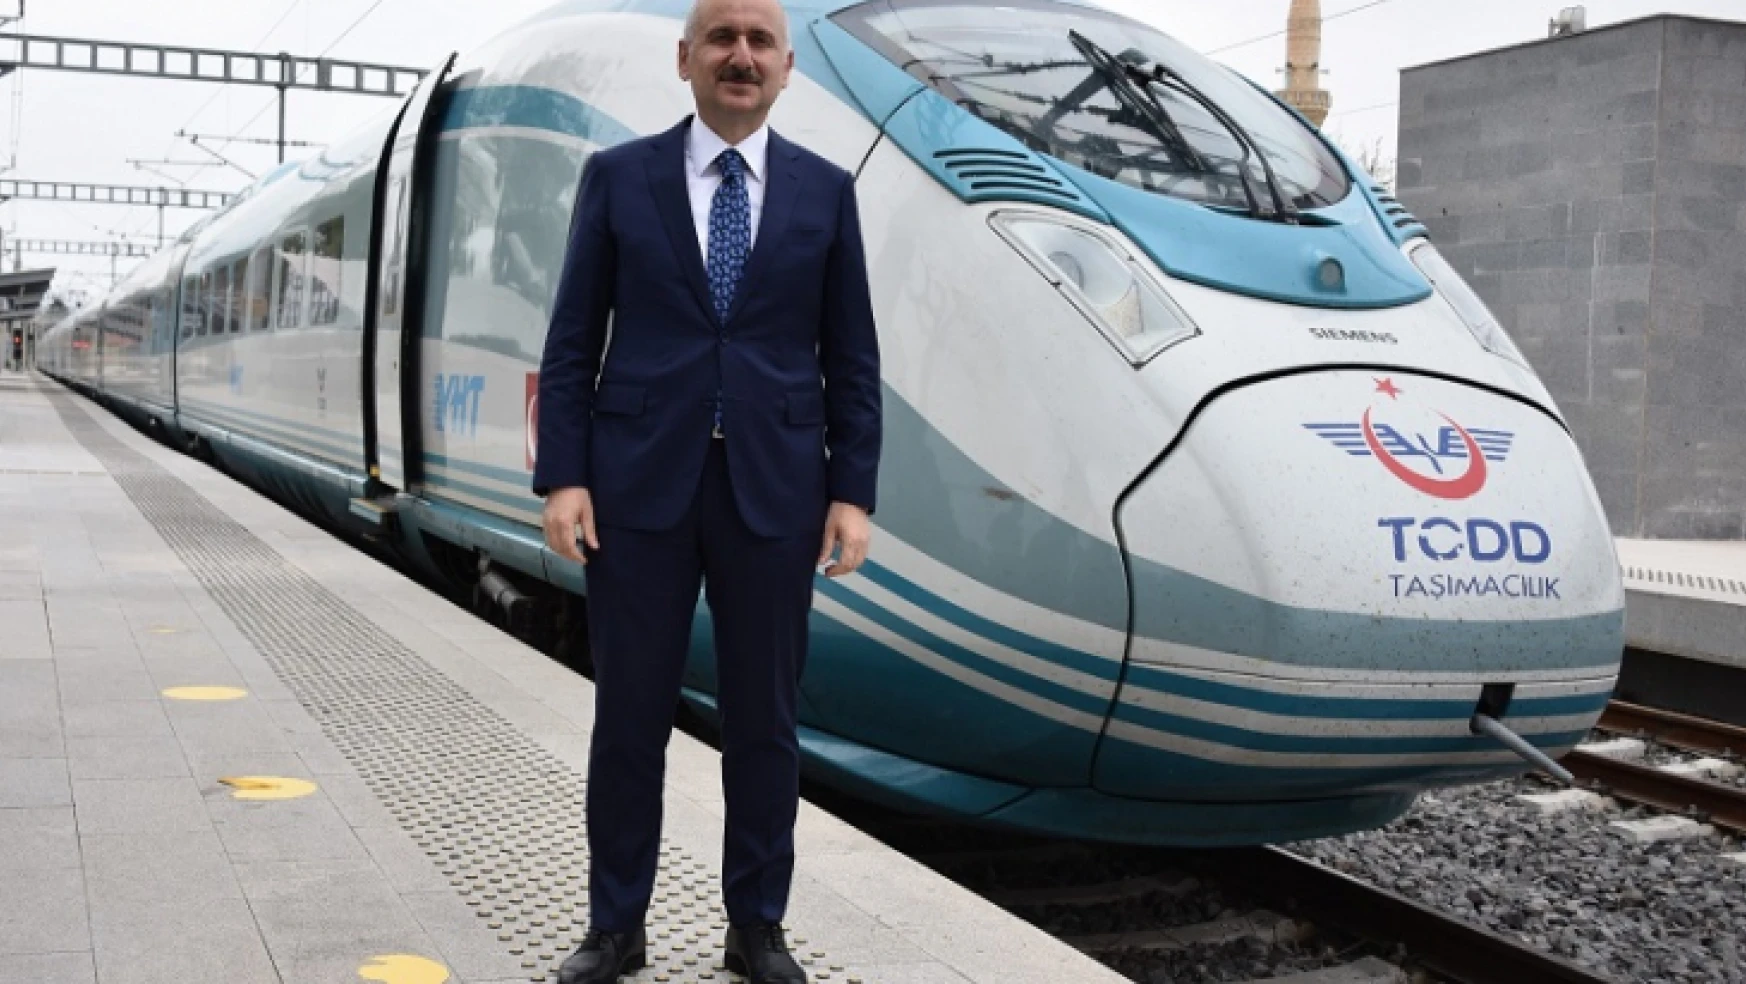 Ulaştırma ve Altyapı Bakanı Adil Karaismailoğlu hızlı tren seferleriyle ilgili yazılı açıklama yaptı.